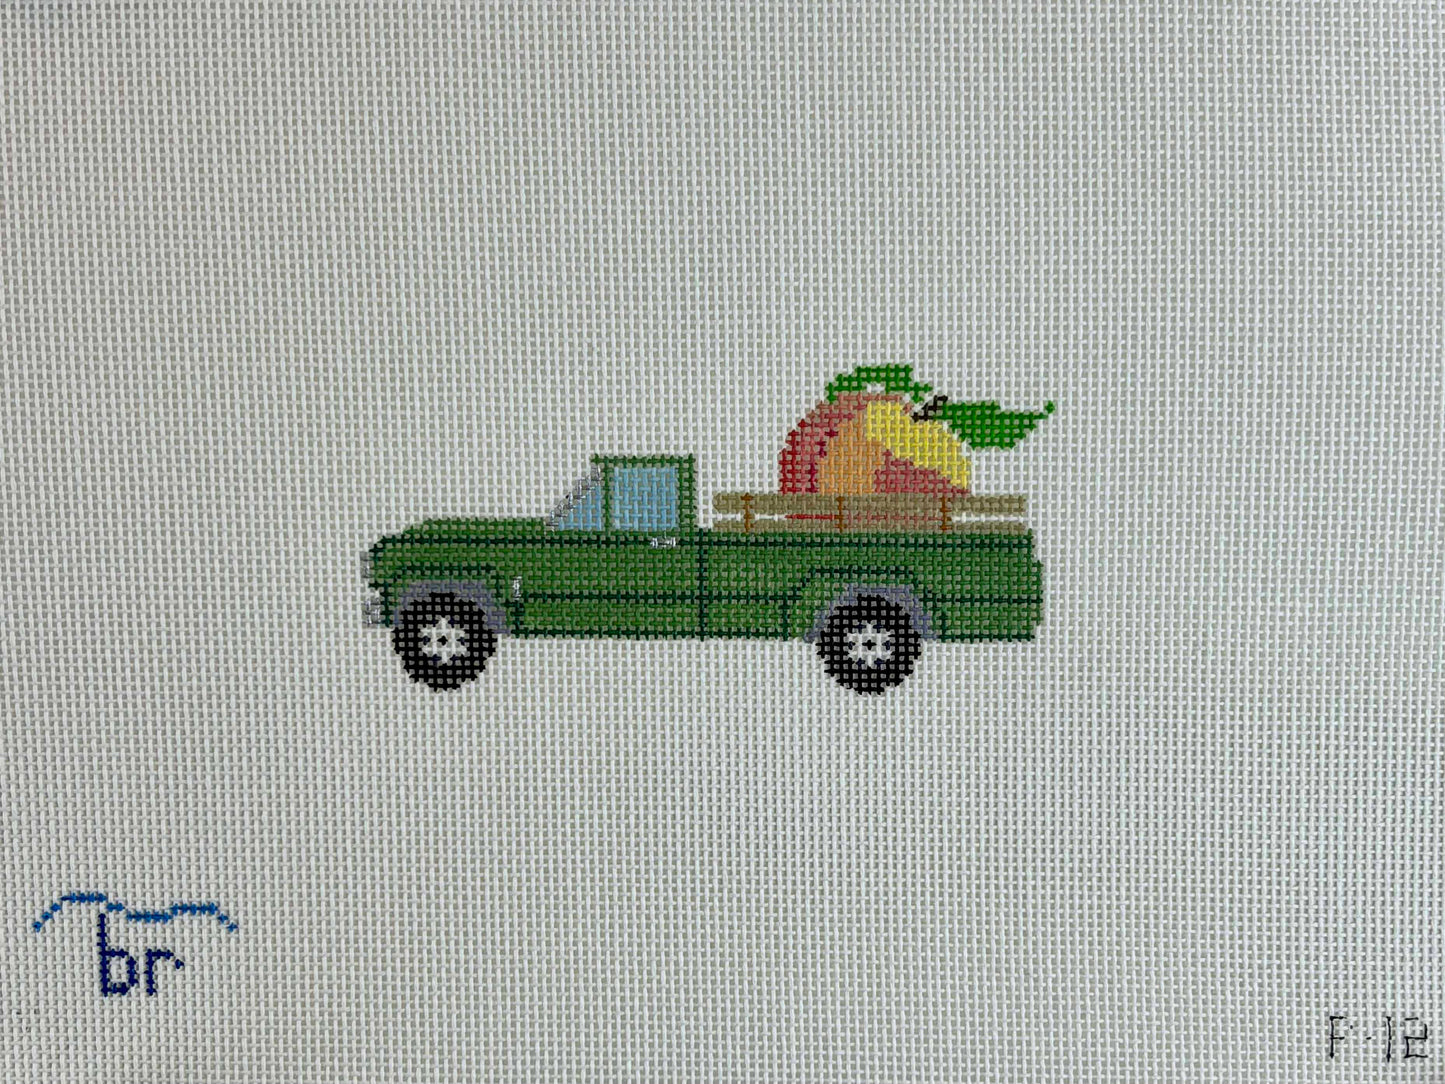 Peach Truck (18 mesh)